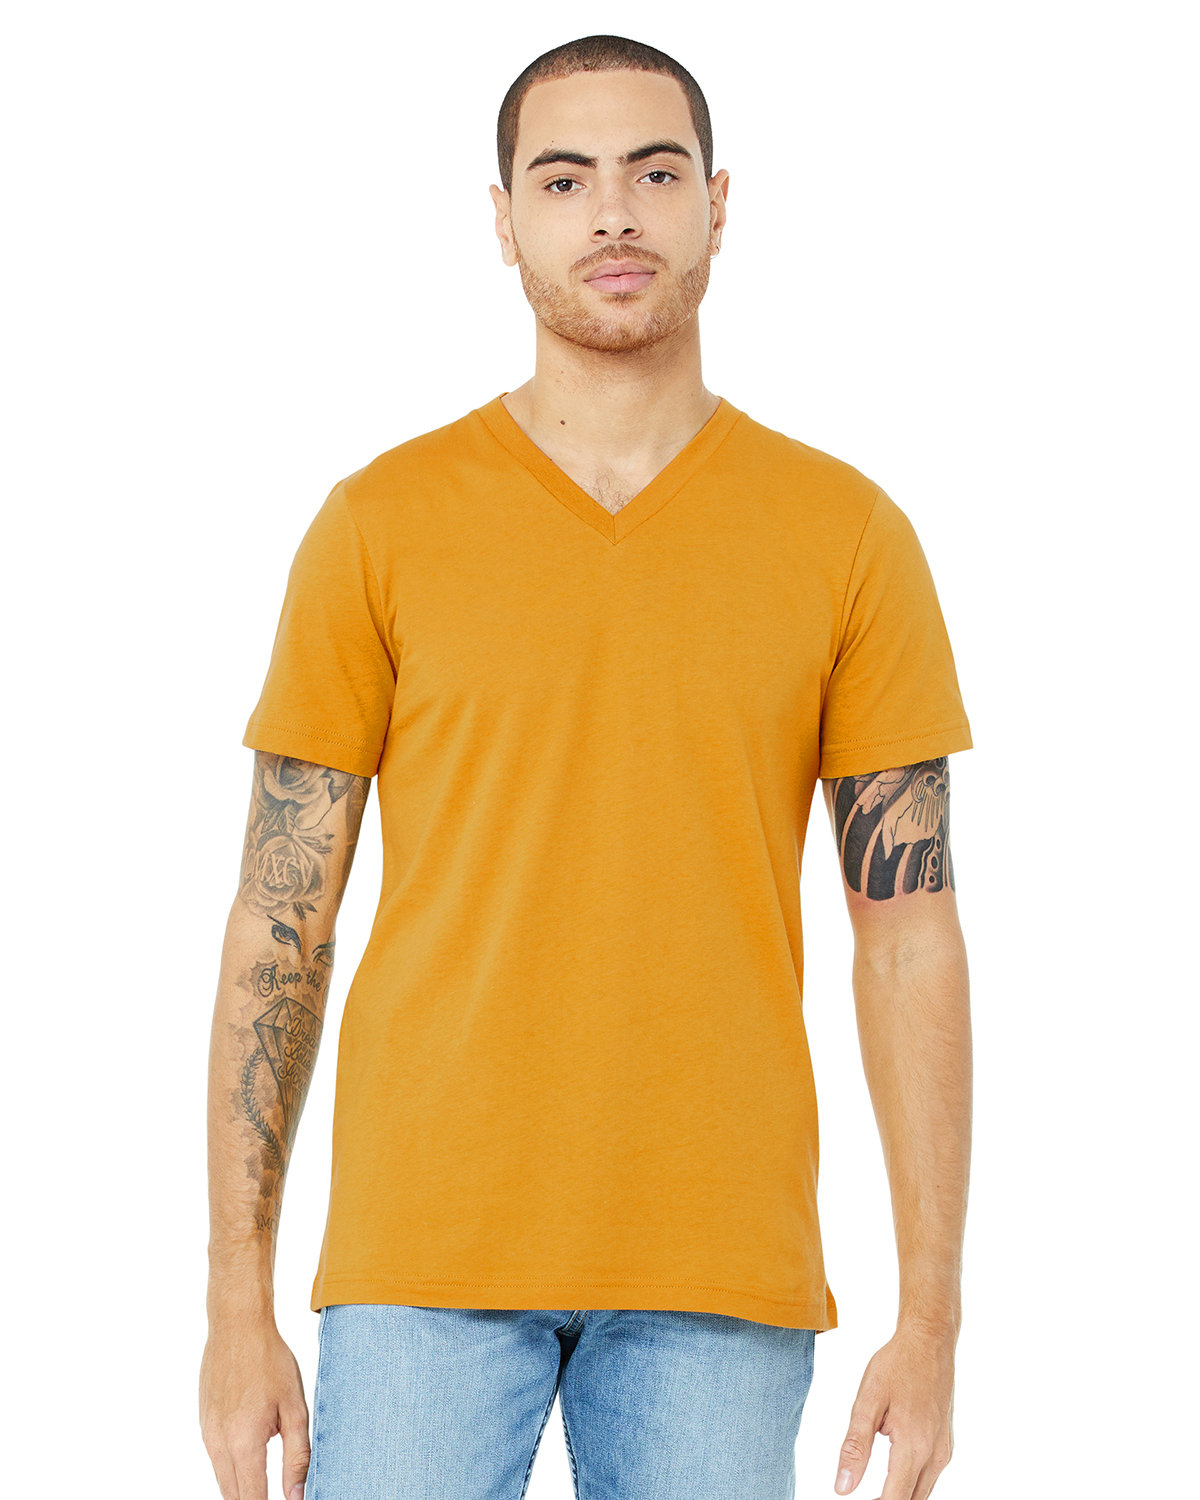 Bella + Canvas Unisex Jersey Short-Sleeve V-Neck T-Shirt MUSTARD 